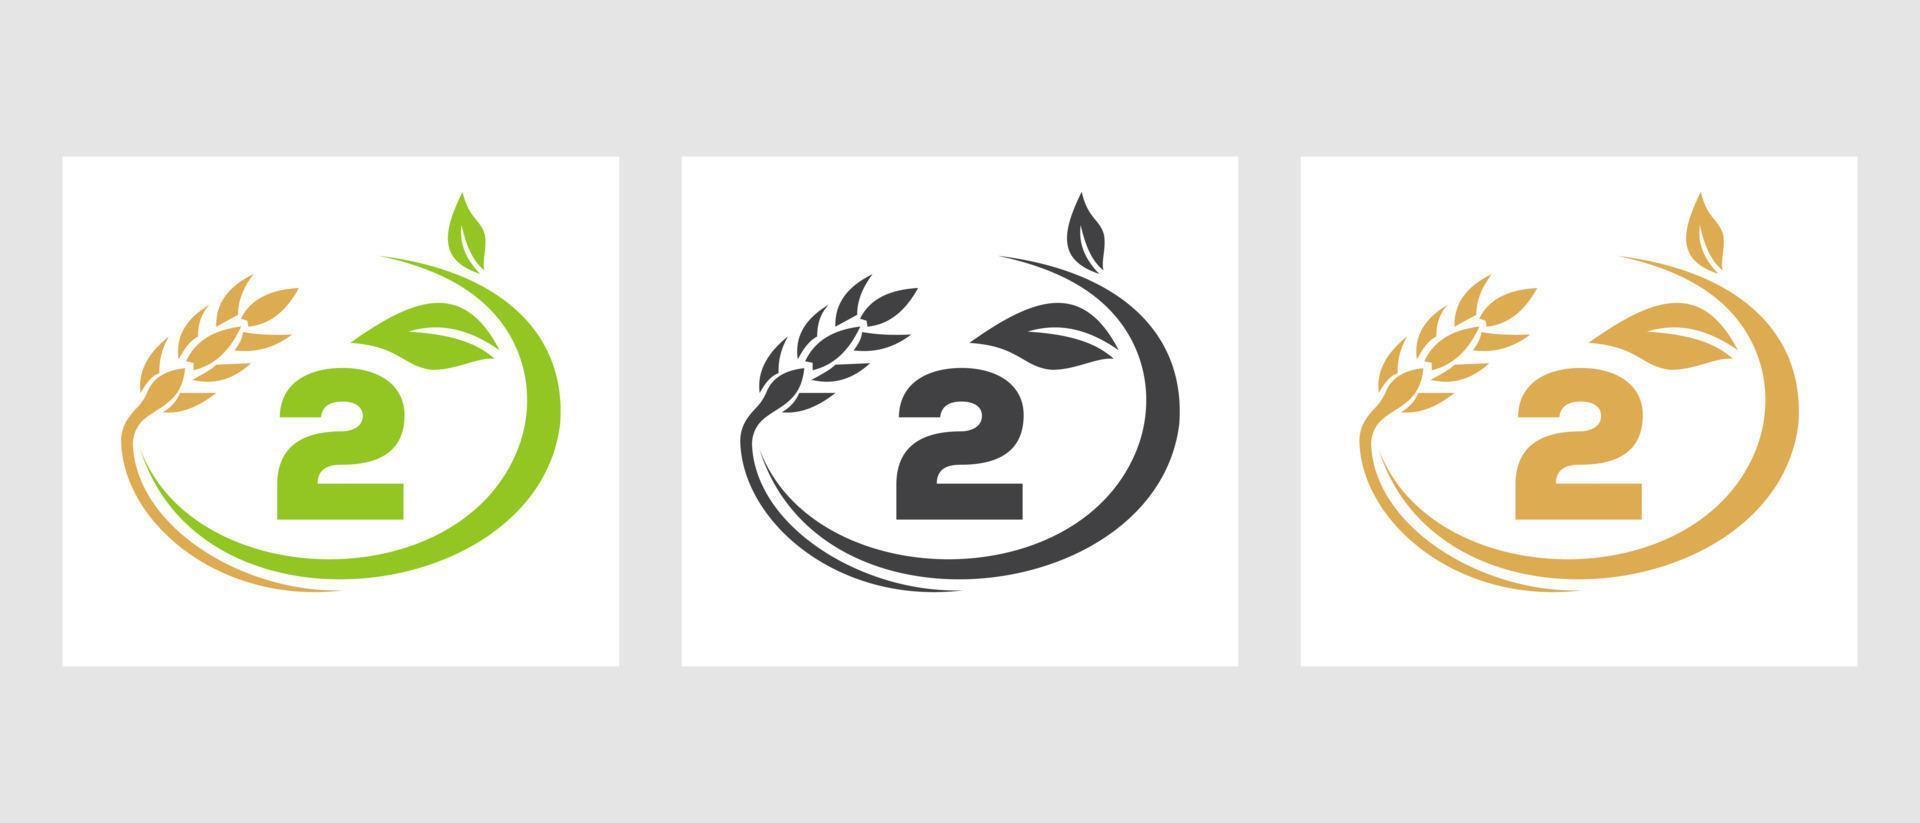 logotipo de la agricultura de la letra 2. agronegocios, plantilla de diseño de granjas ecológicas vector